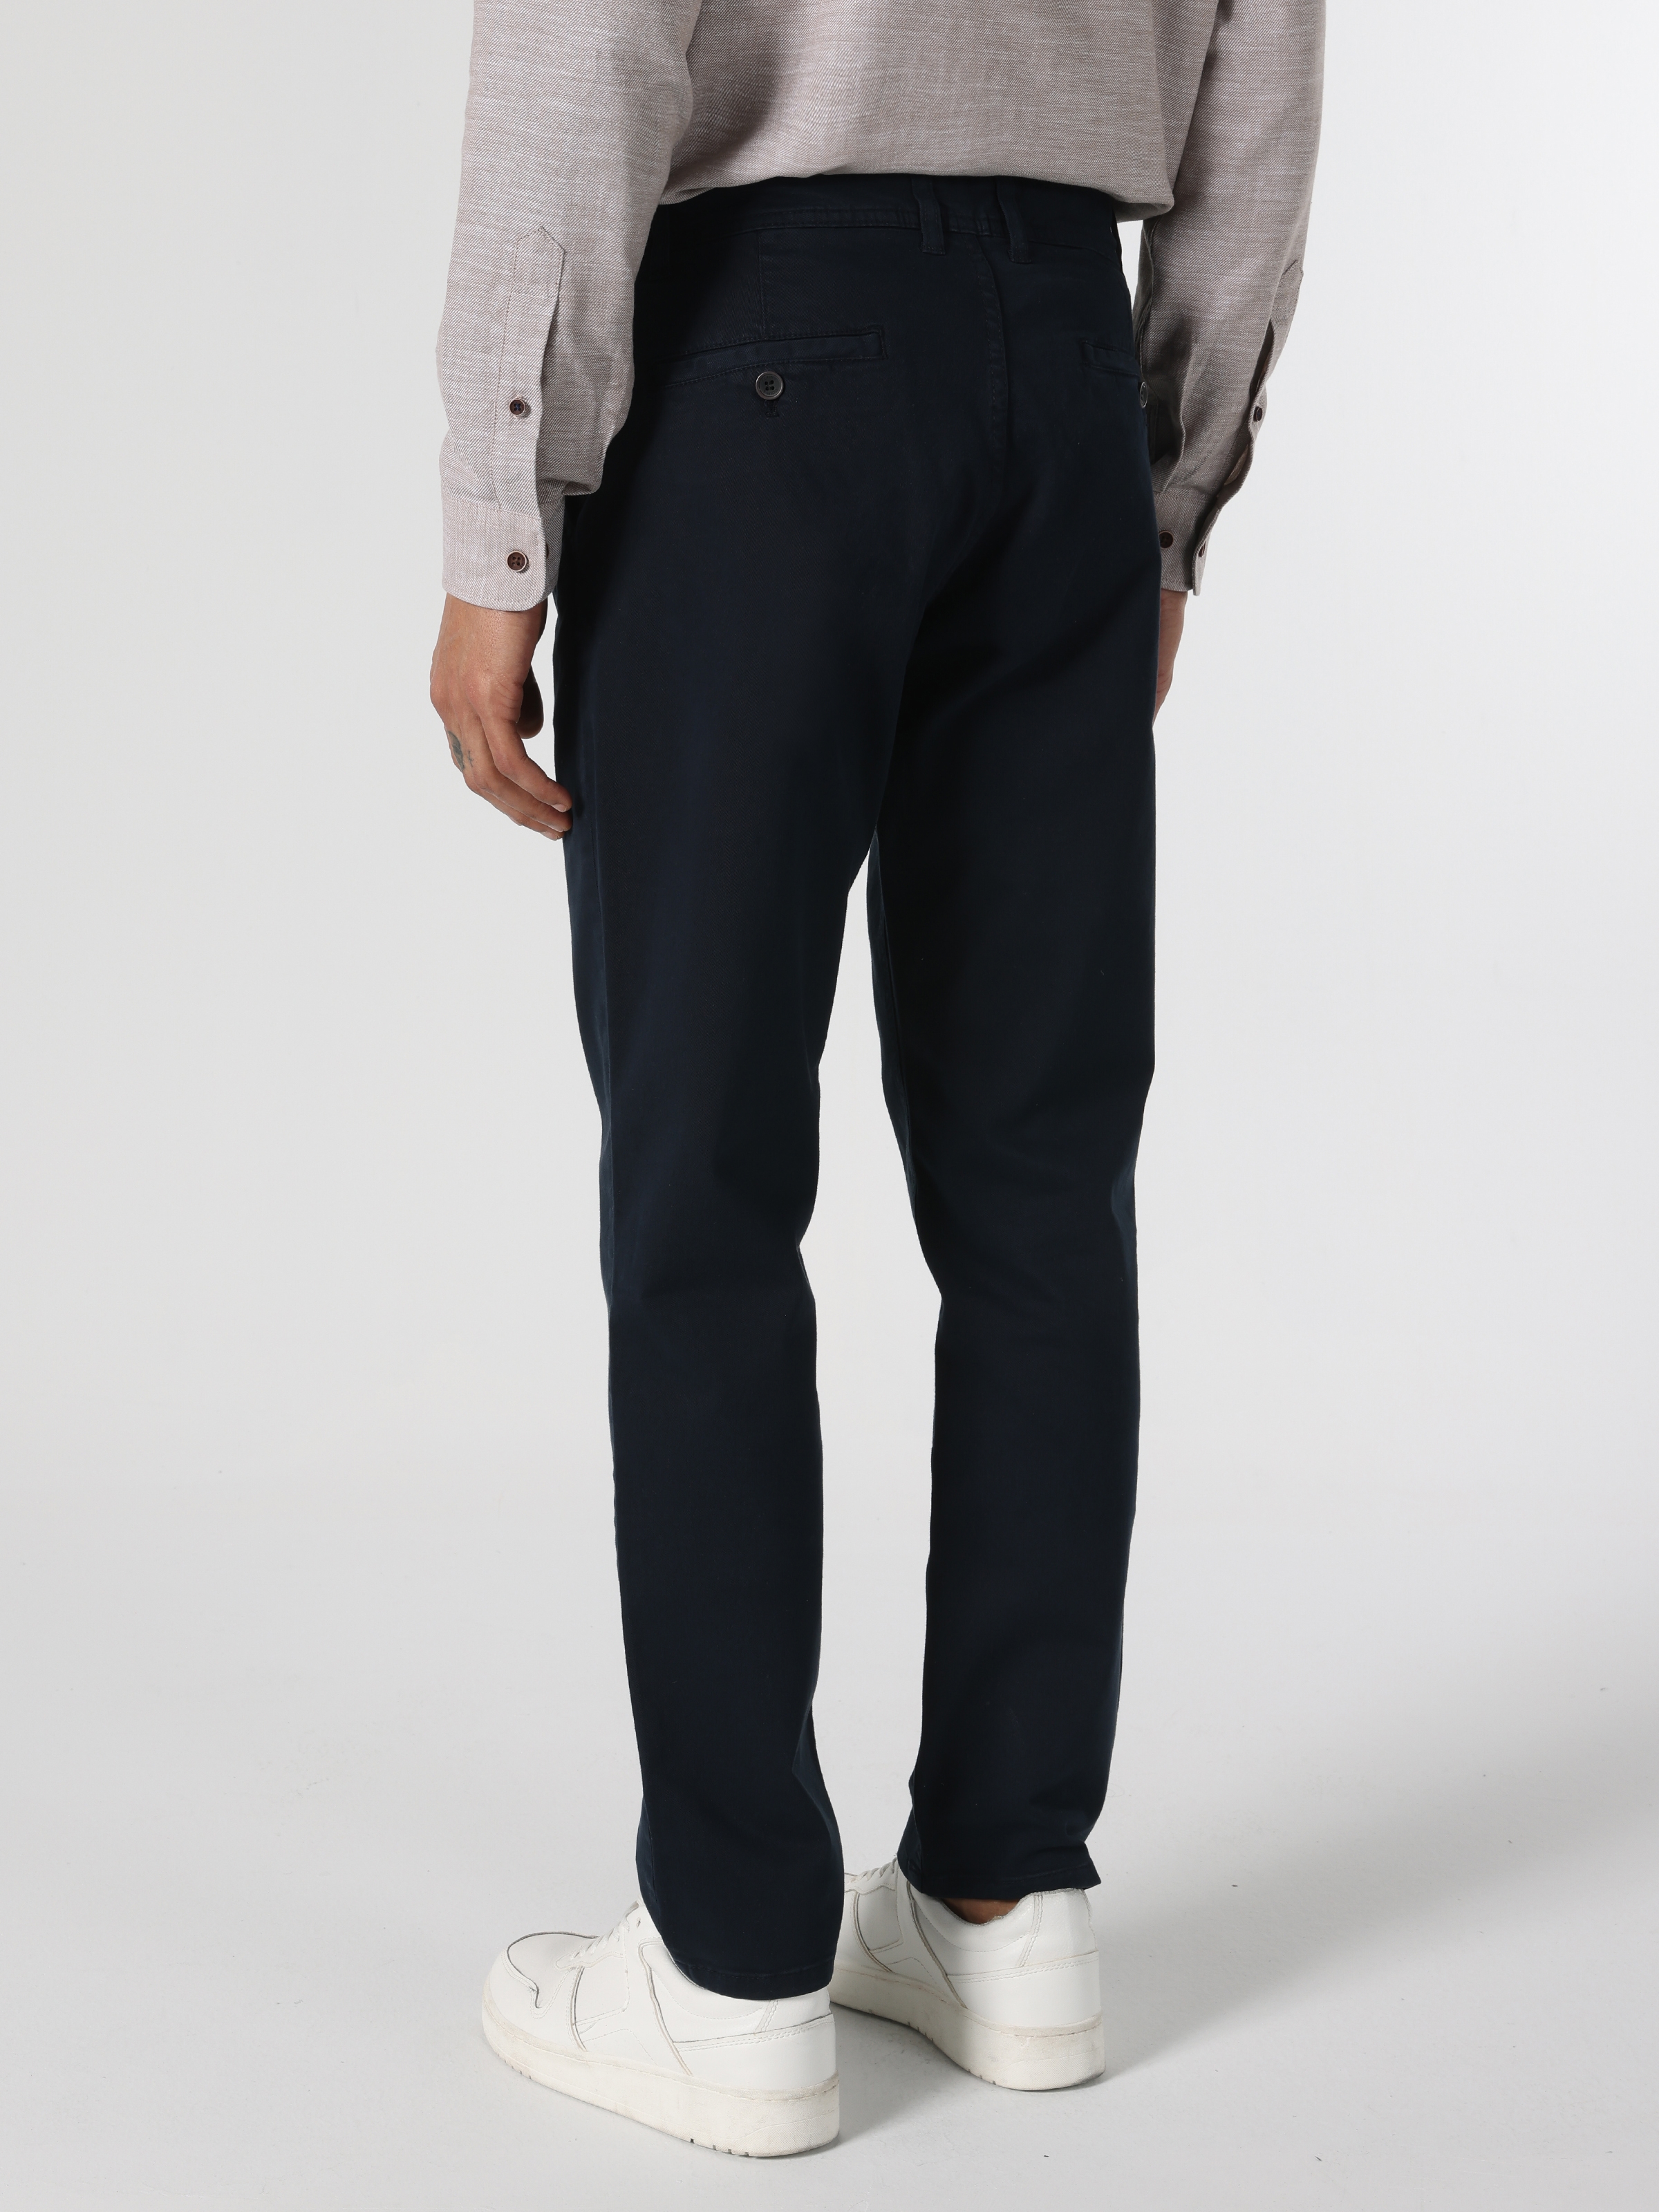 Afficher les détails de Pantalon Bleu Marine Pour Homme, Coupe Régulière, Taille Moyenne, Jambe Droite